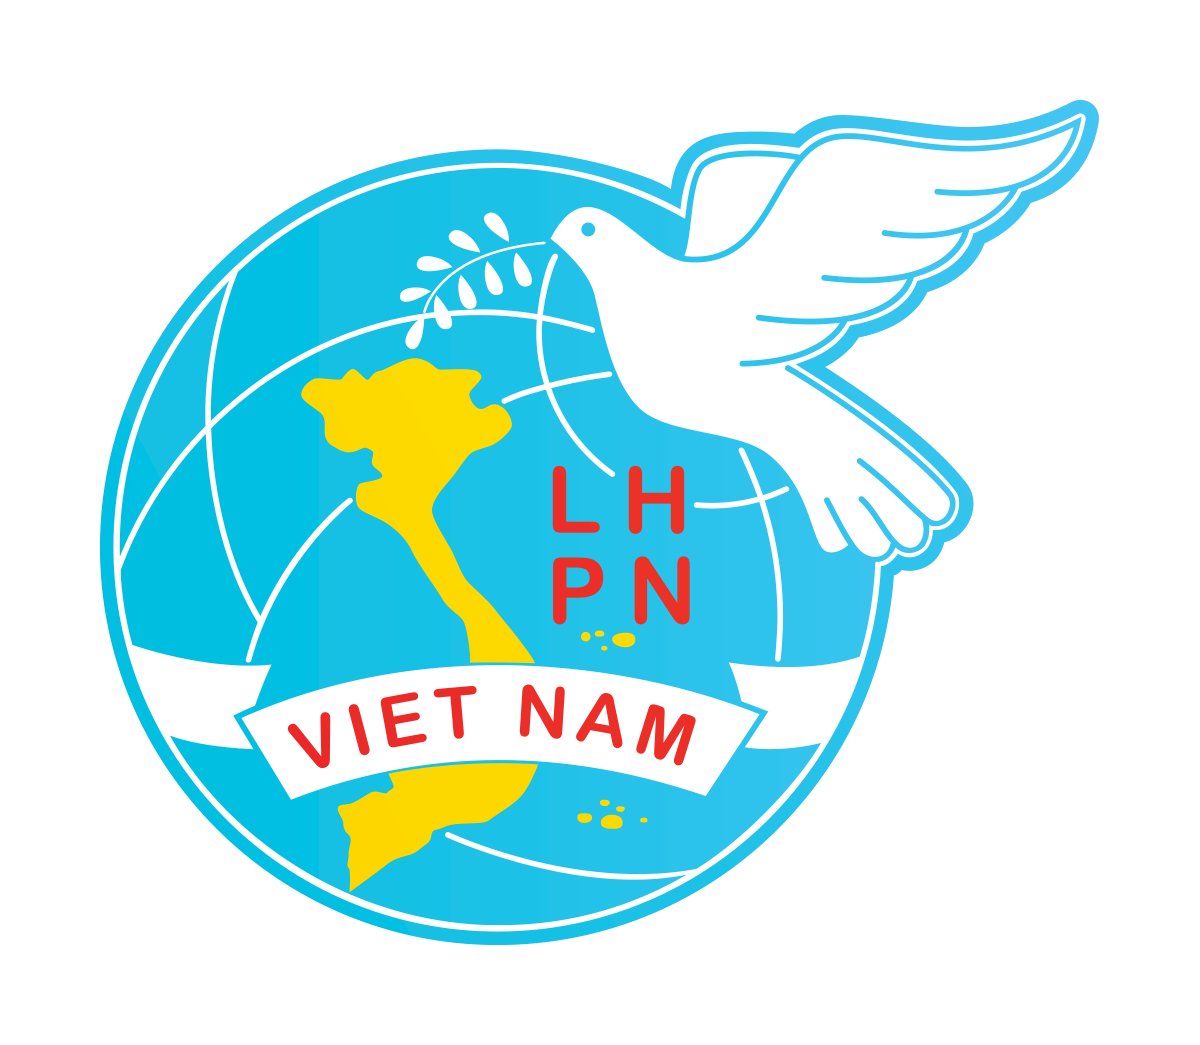 Logo Hội Liên Hiệp Phụ Nữ Việt Nam vector có ý nghĩa gì?
